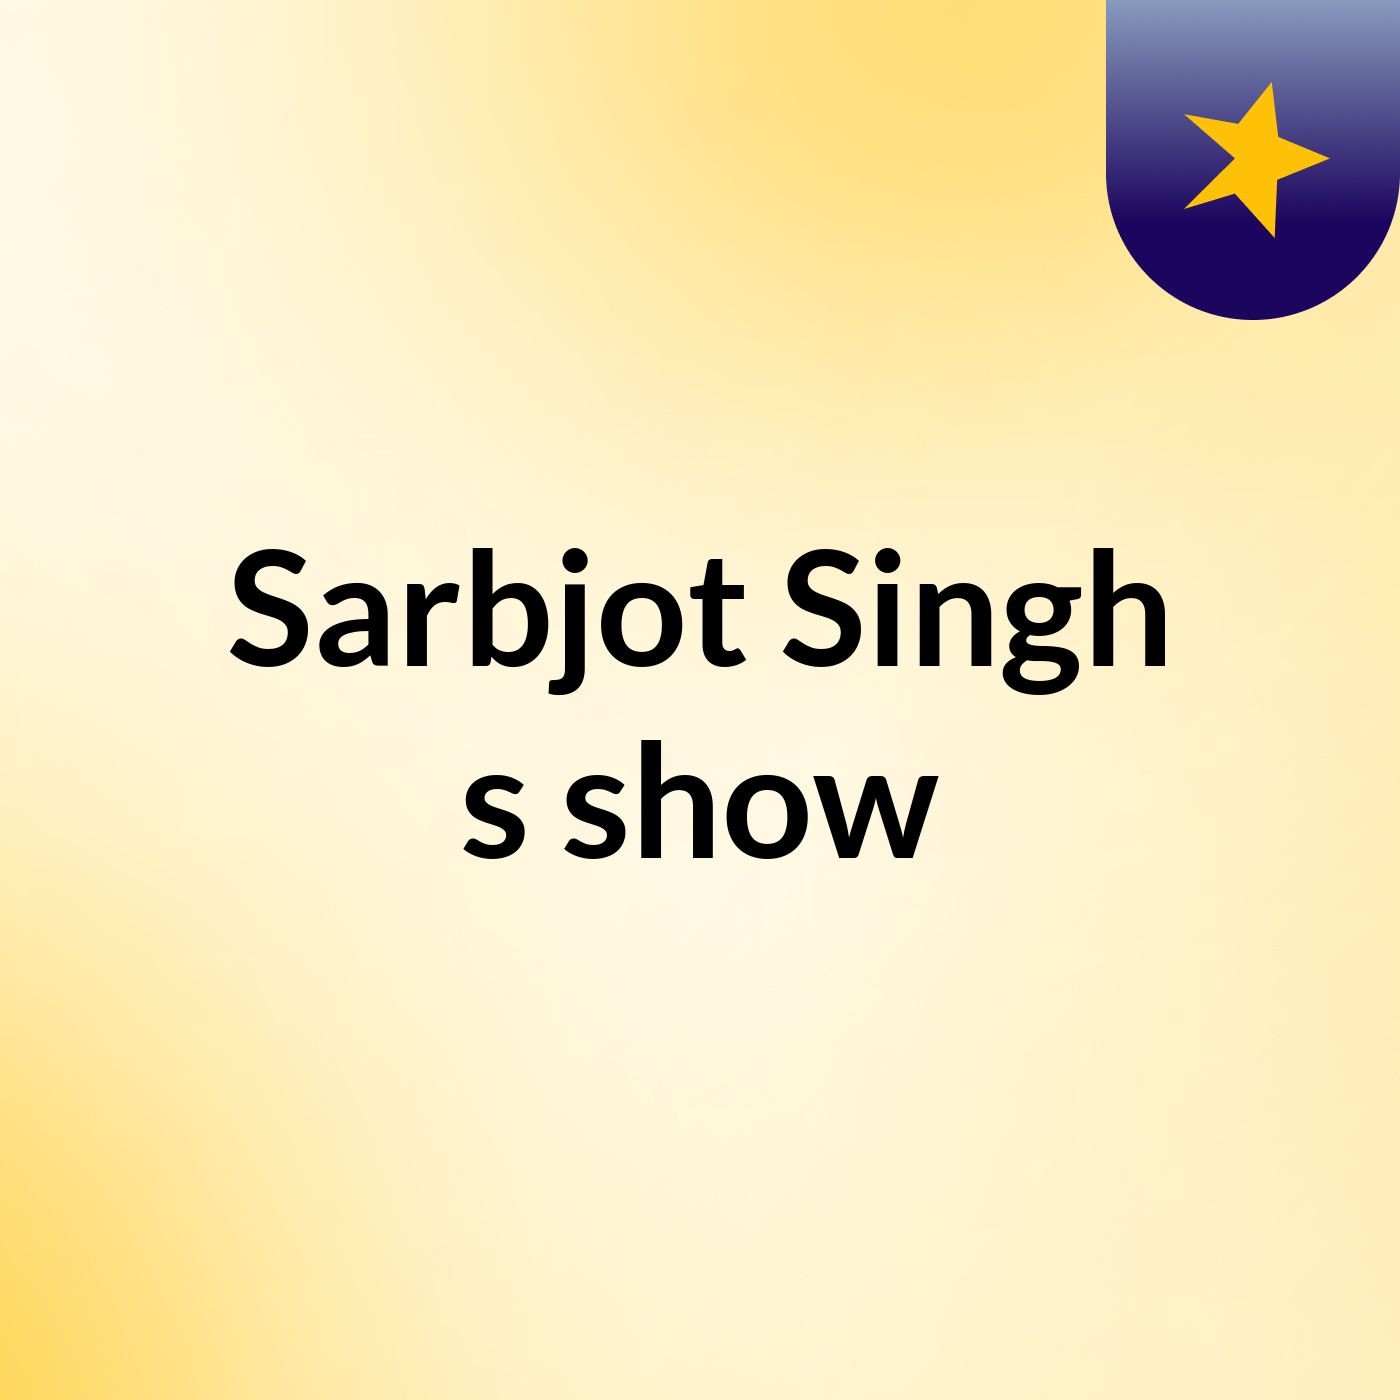 Sarbjot Singh's show